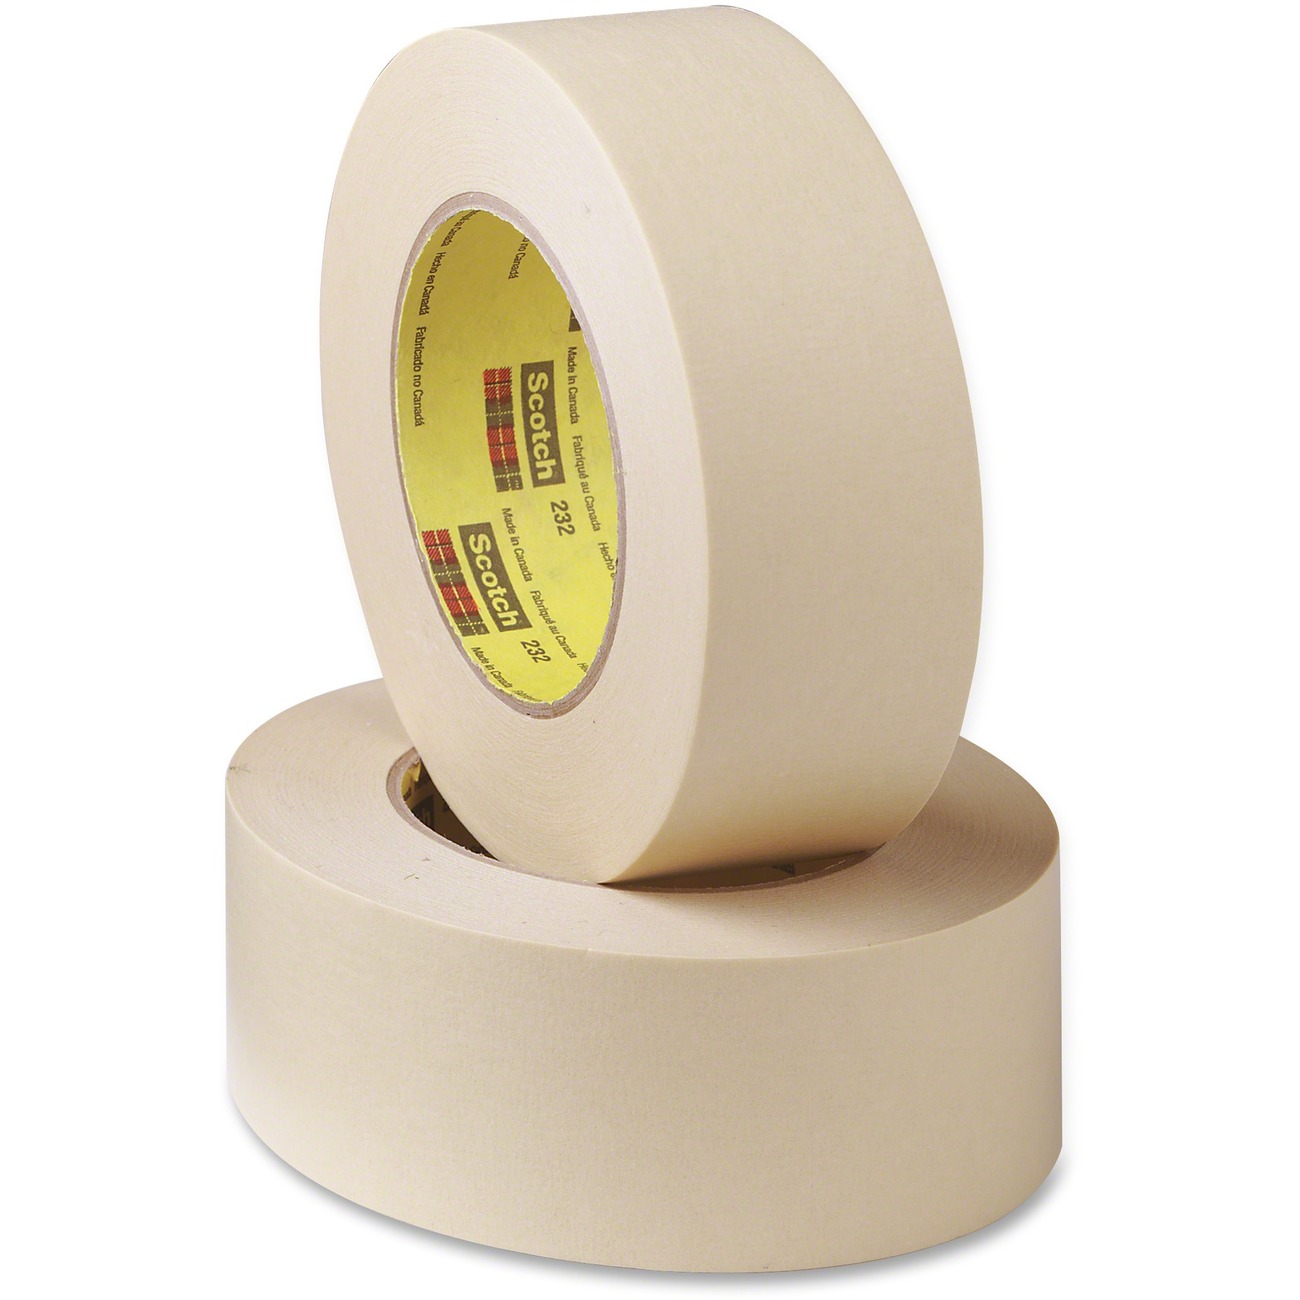 Simply buy Fine crepe adhesive tape set, natural